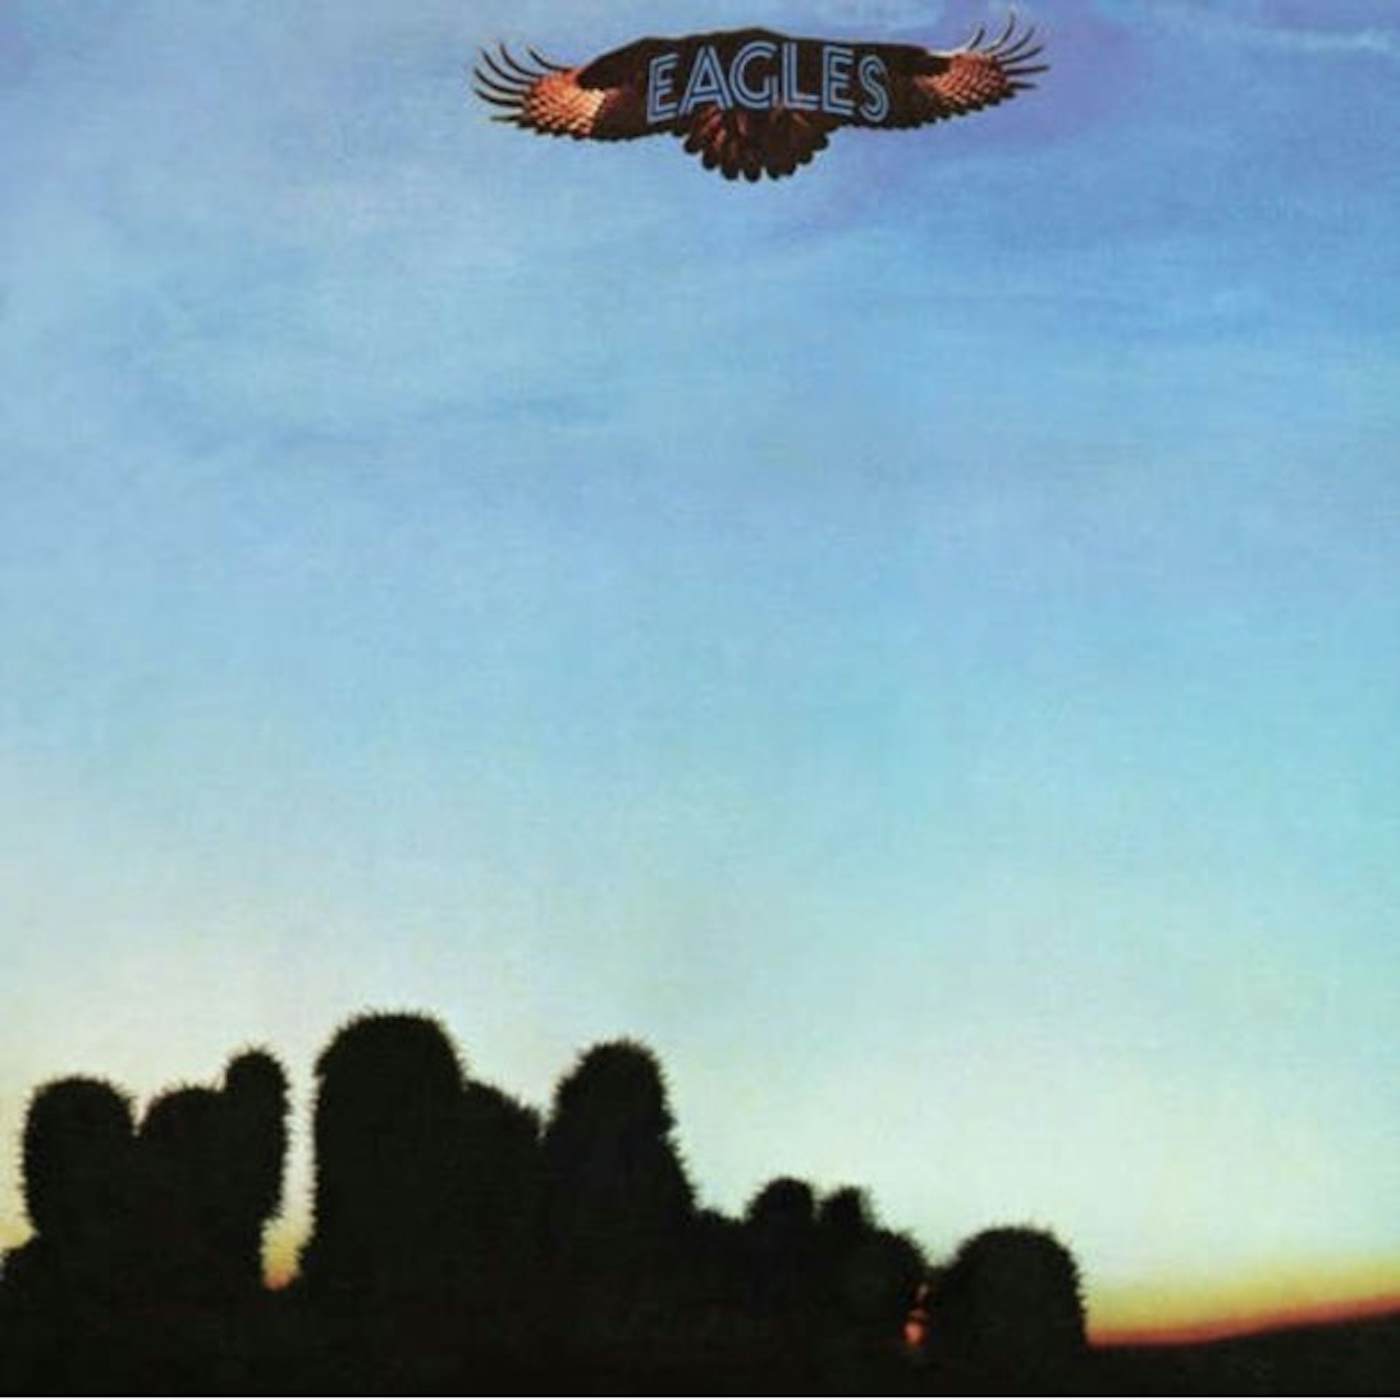 EAGLES Vinyl Record